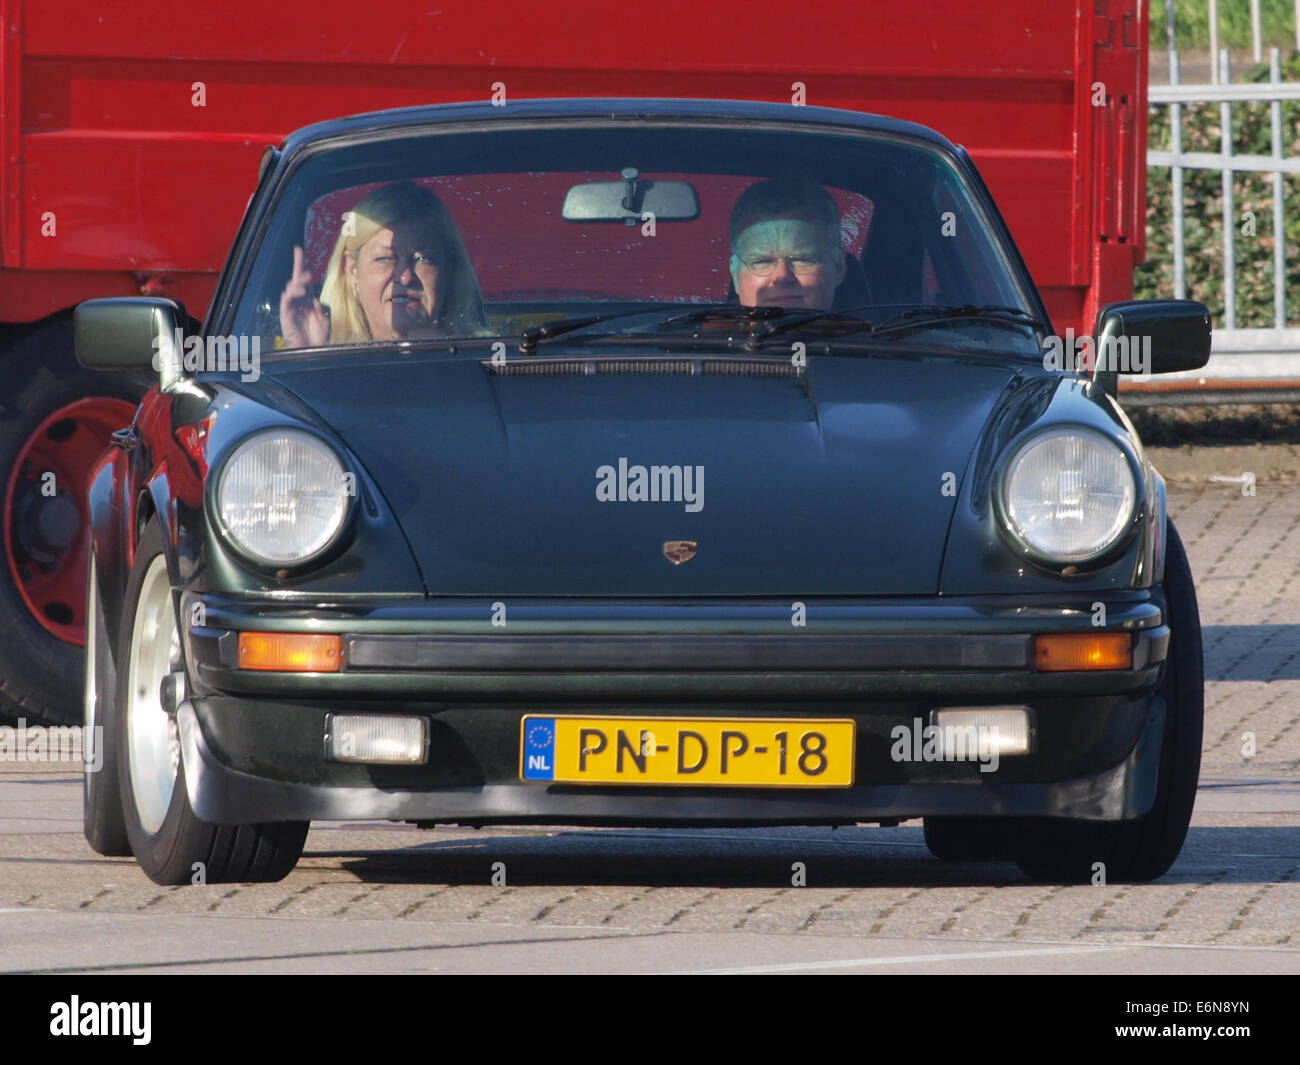 Porsche 911 SC (1980), le néerlandais inscription licecence PN-DP-18, pic2 Banque D'Images